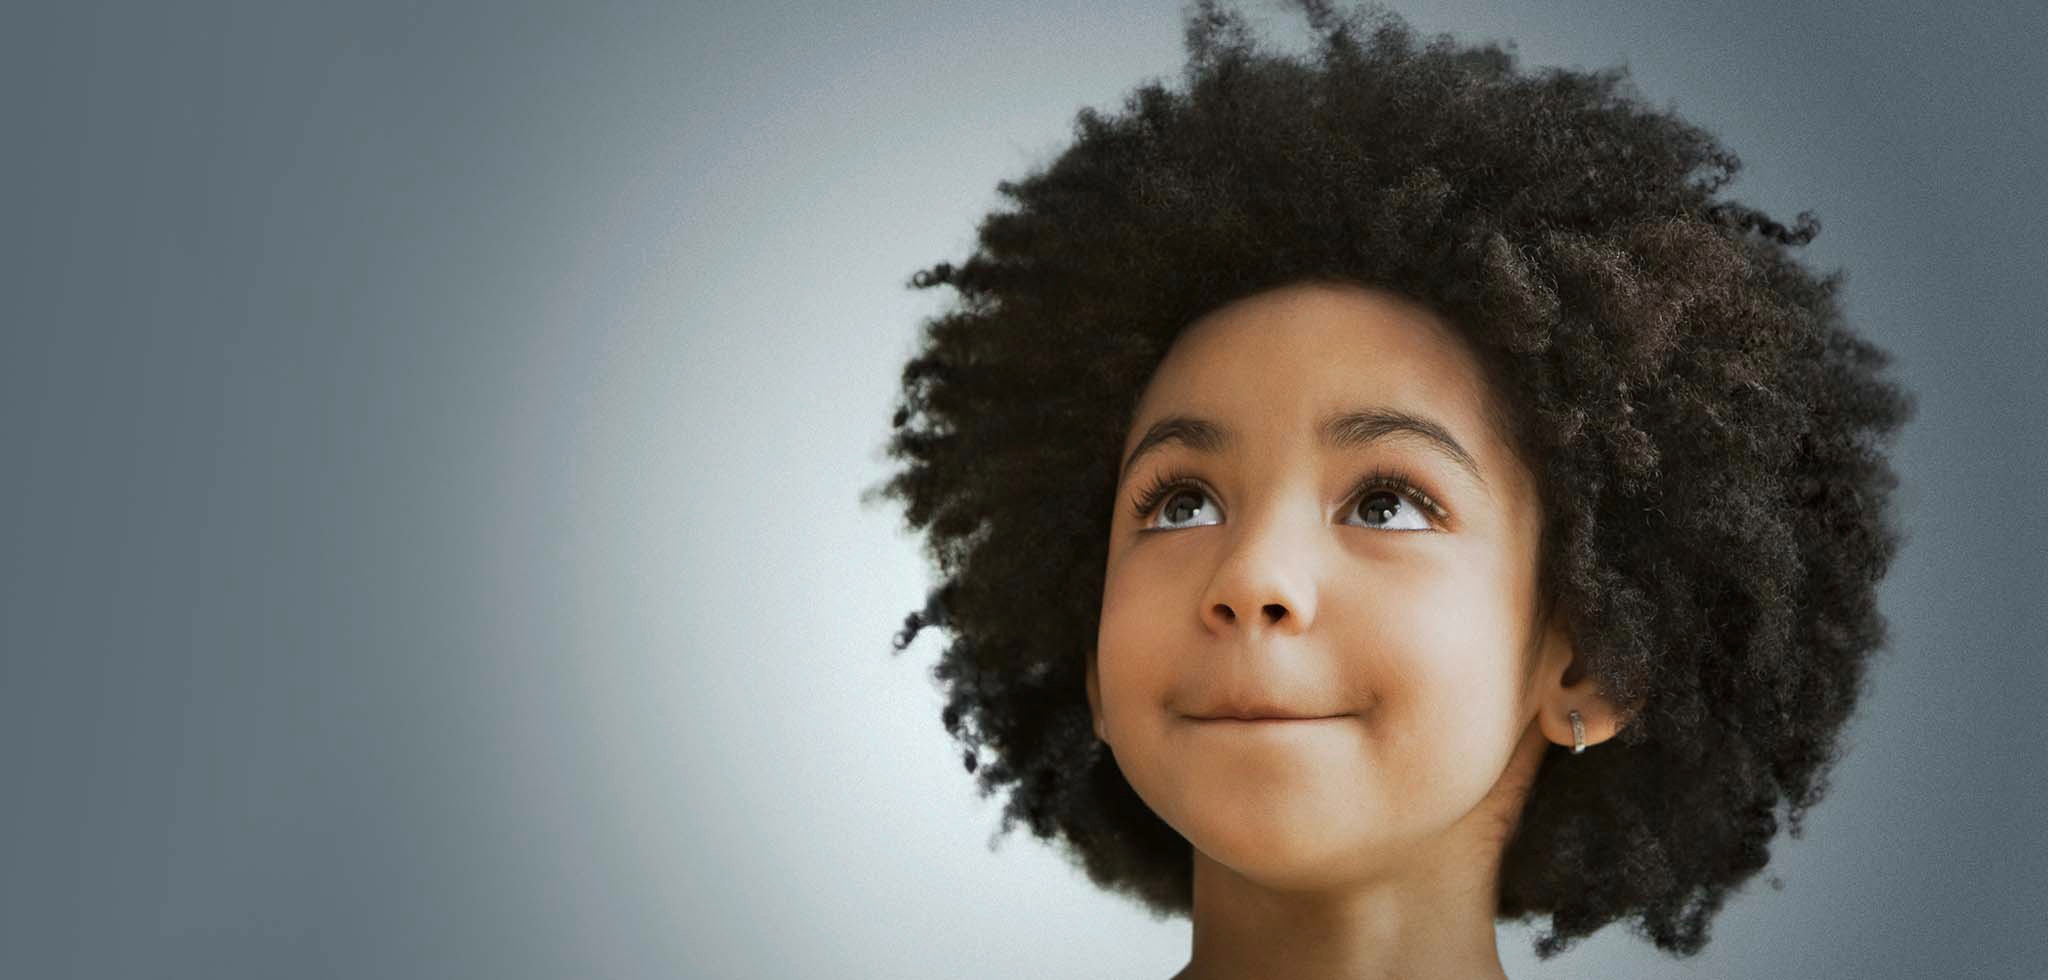 La discriminación racial basada en el cabello comienza desde temprana edad